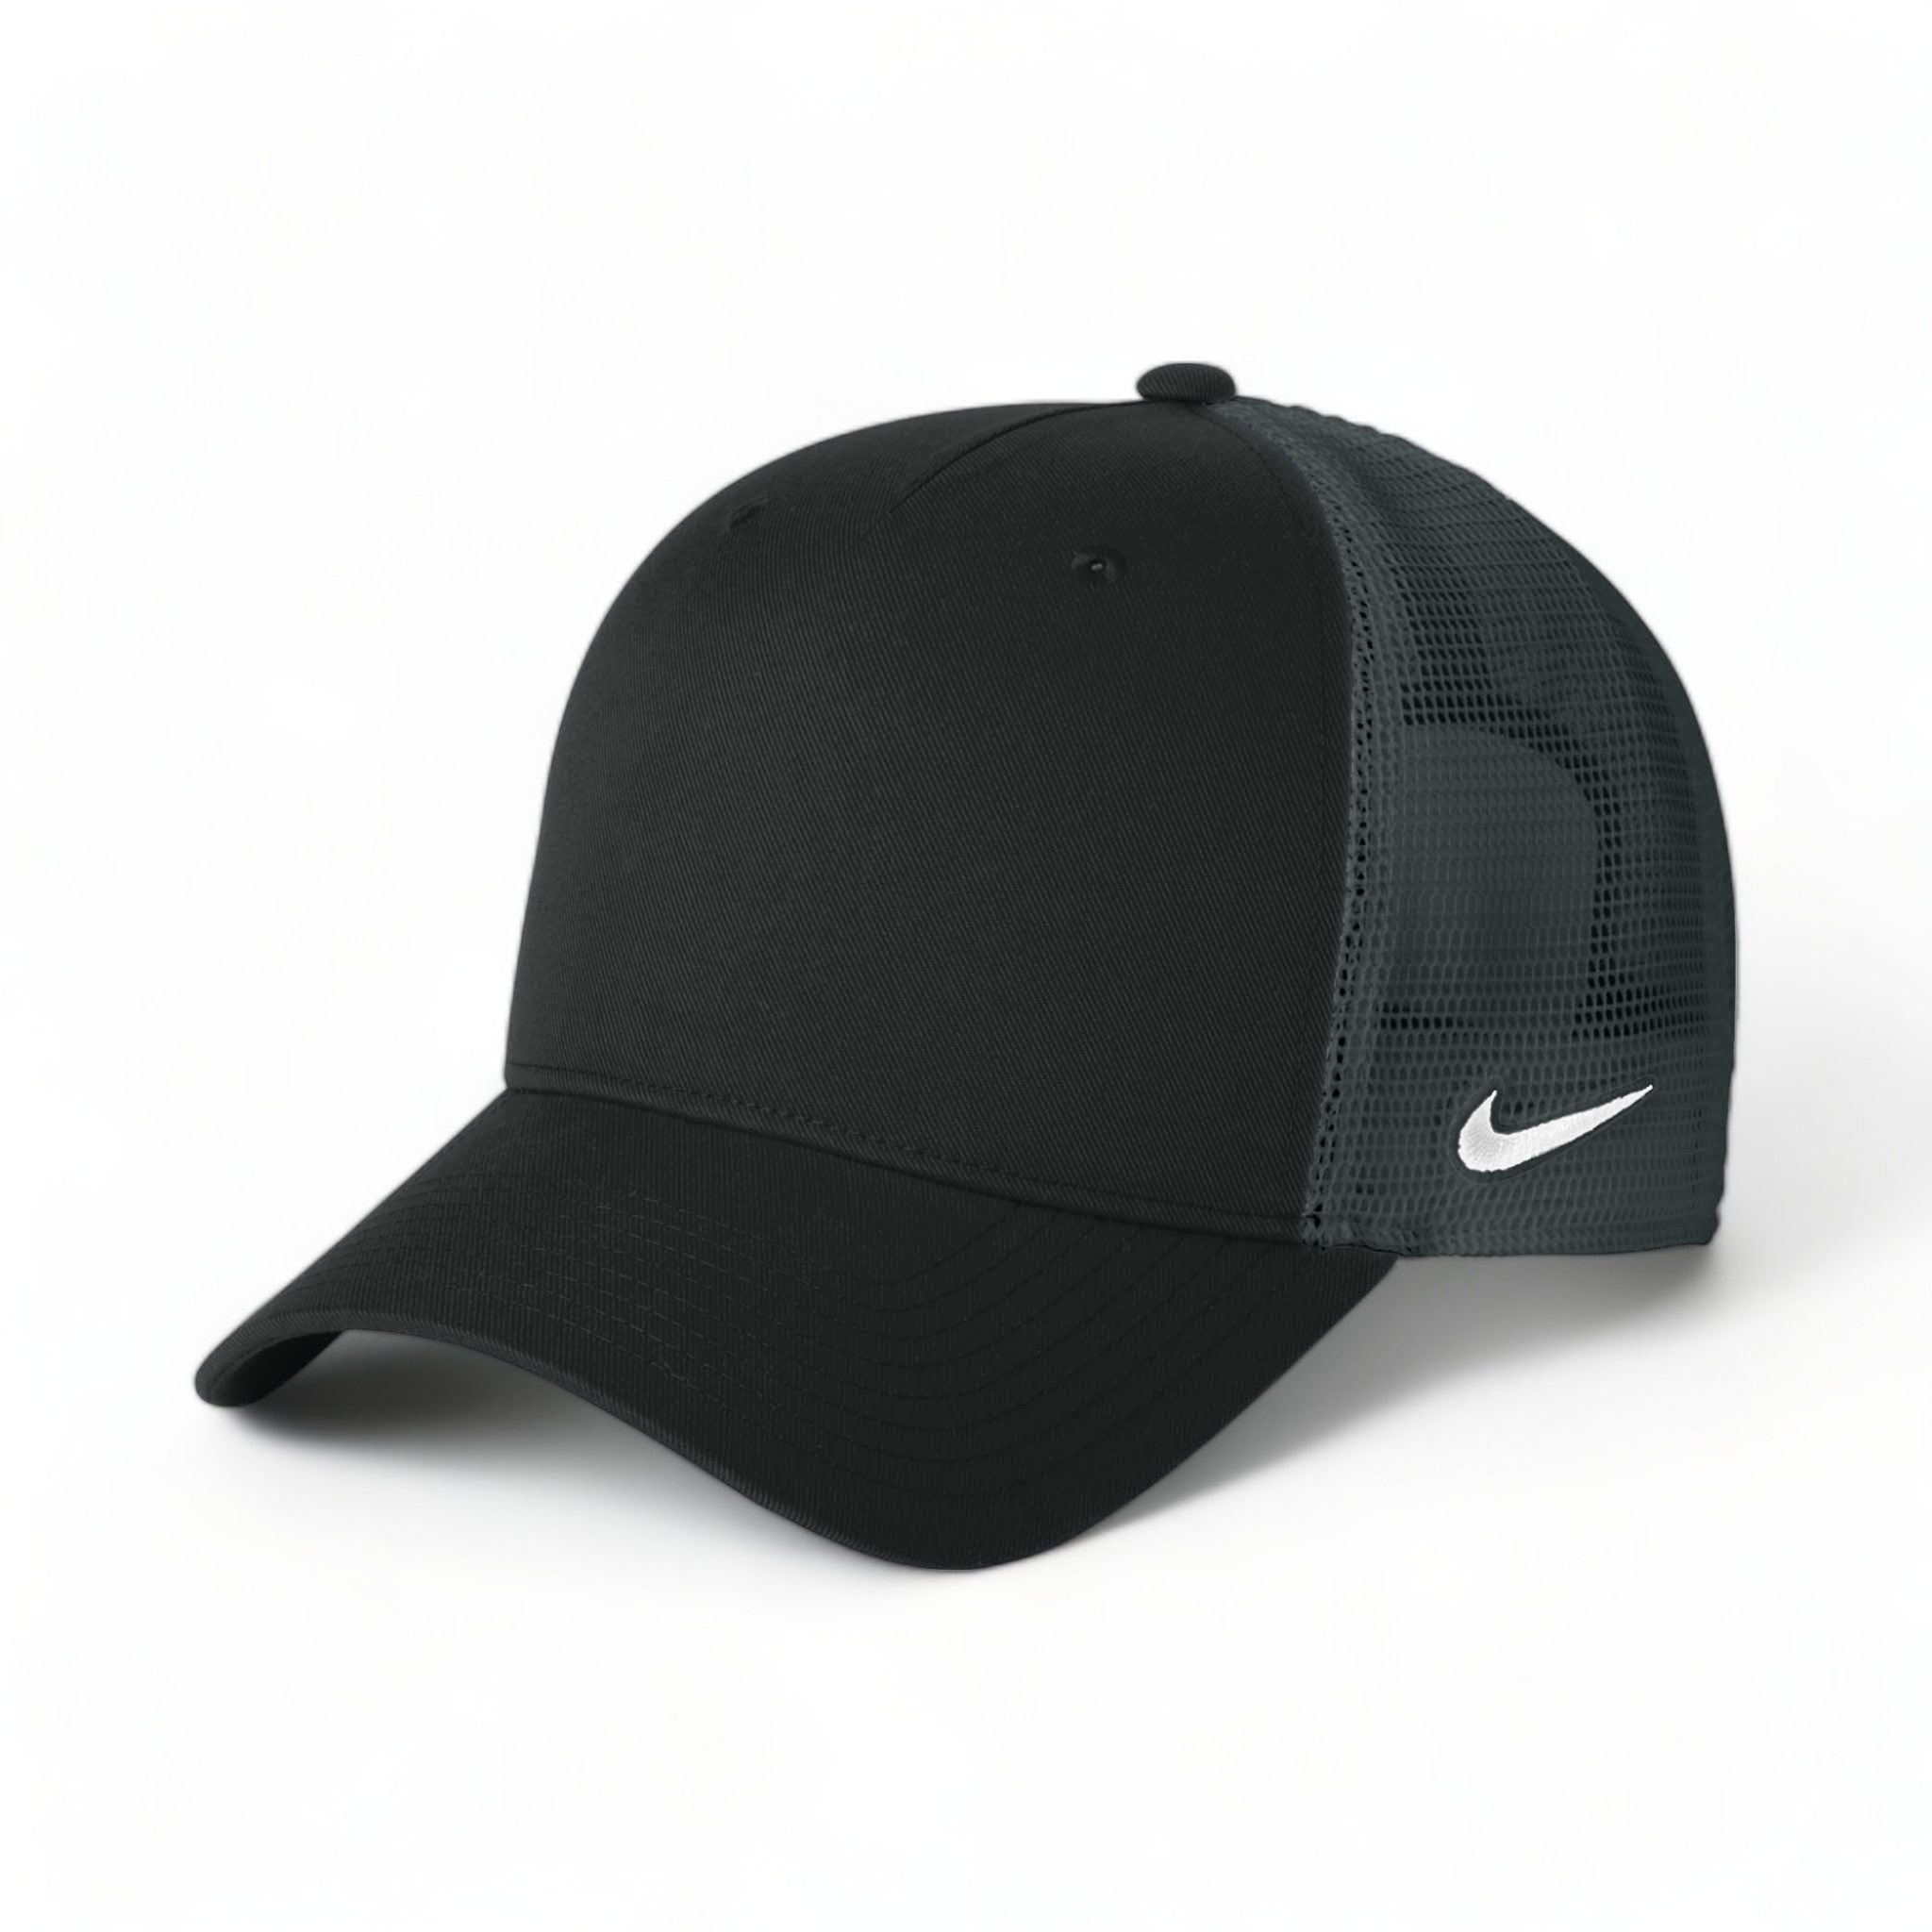 Side view of Nike NKFN9893 custom hat in black and dark grey